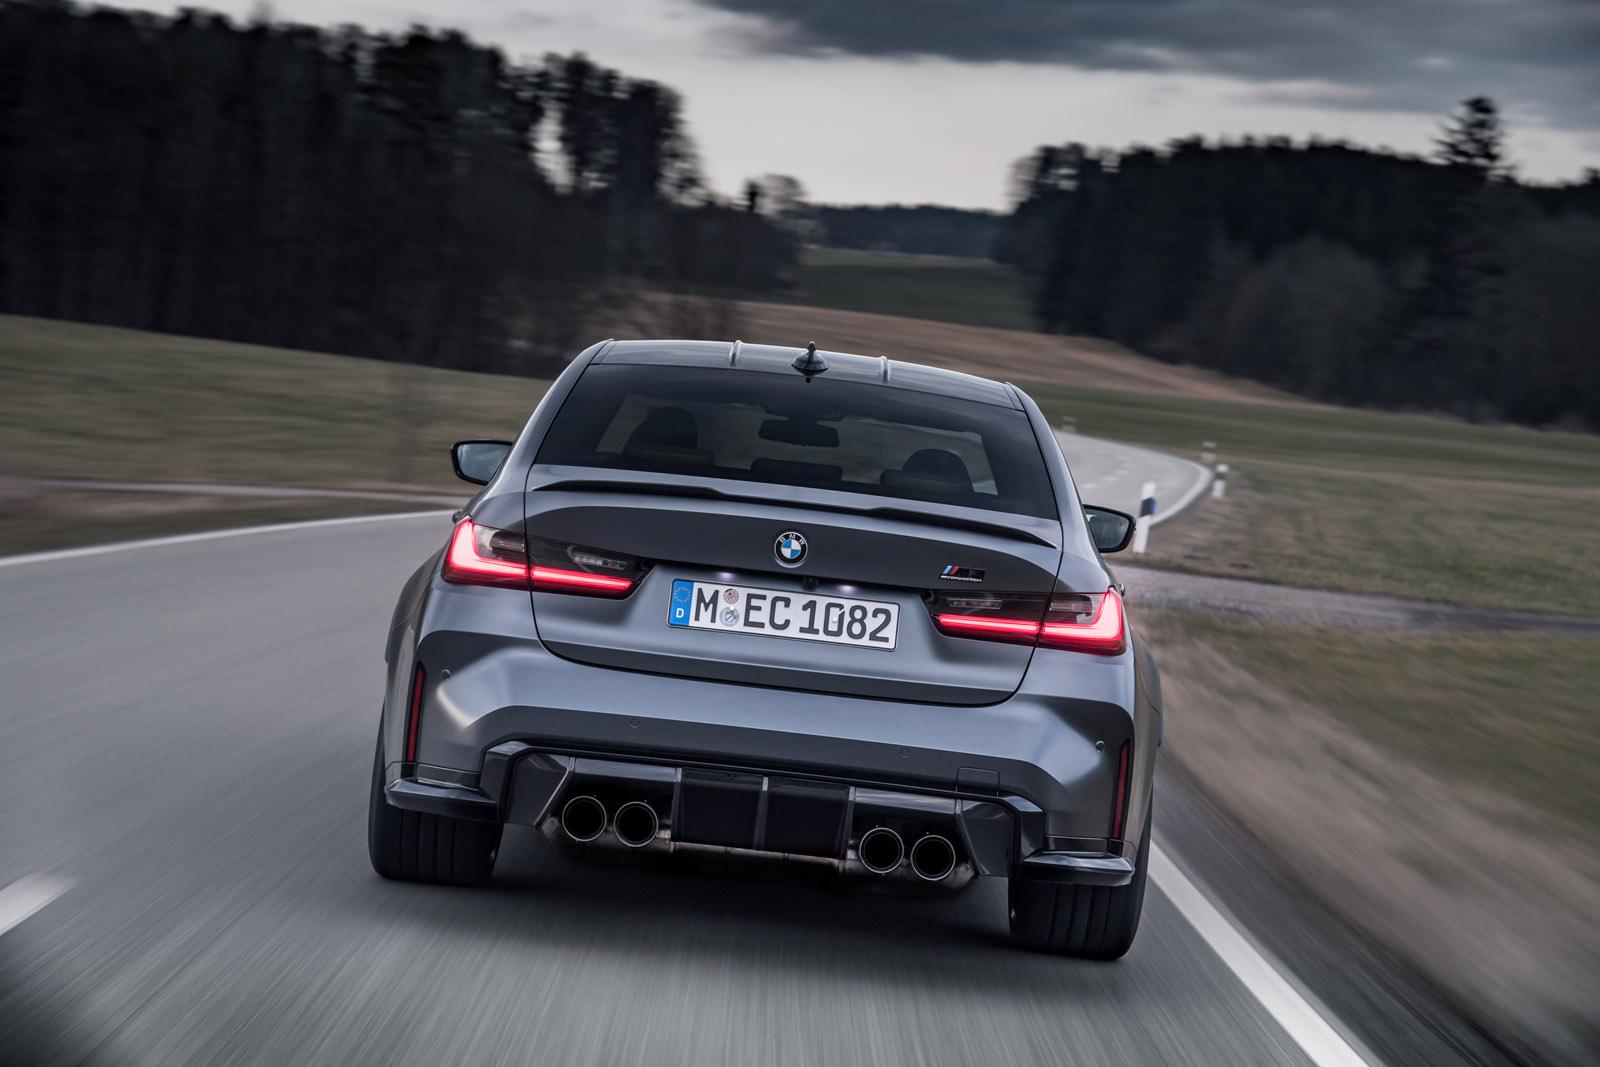 BMW M3 rear